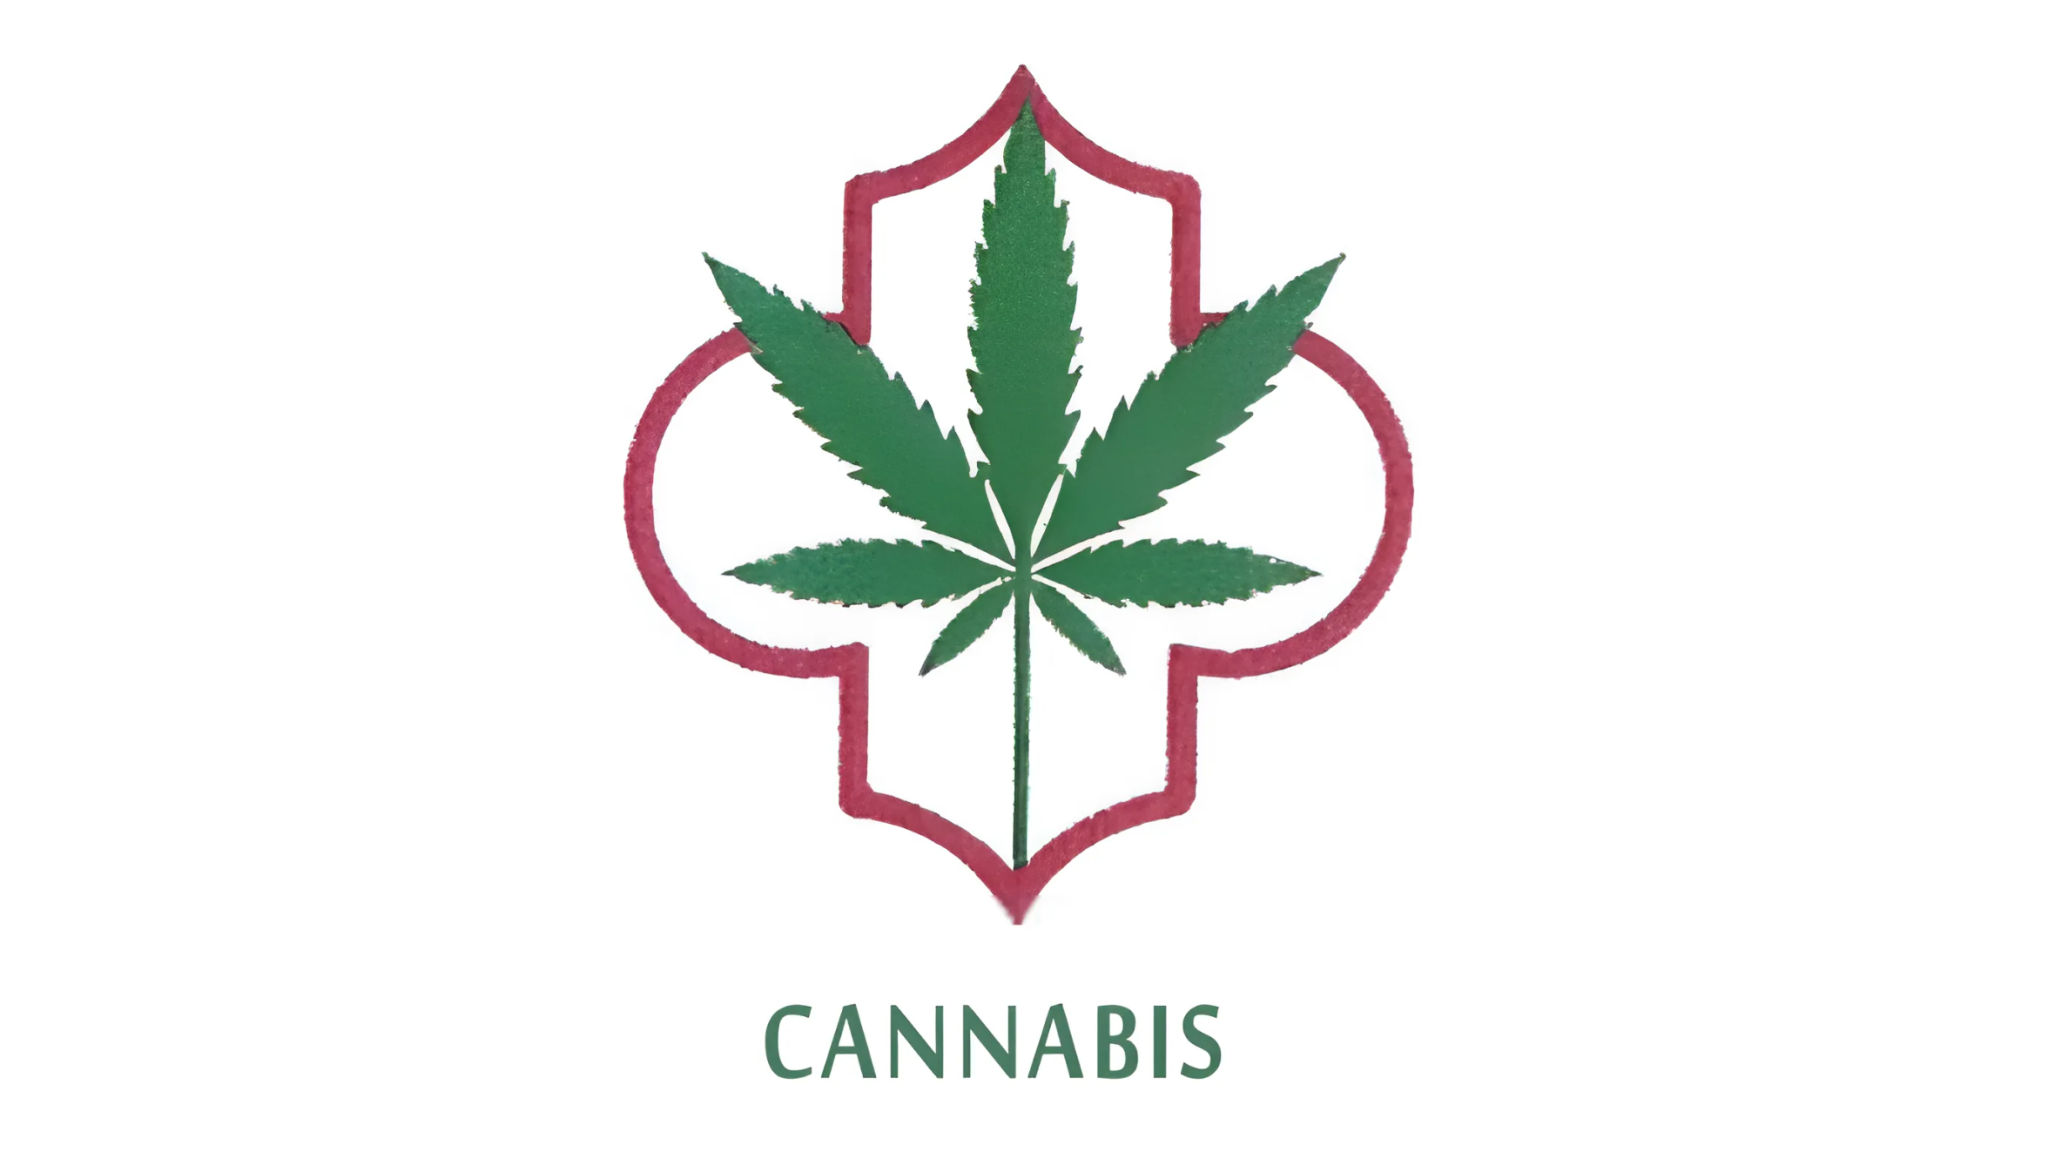 Cannabis : Ce qu'il faut savoir sur le nouveau symbole officiel marqué sur les produits marocains